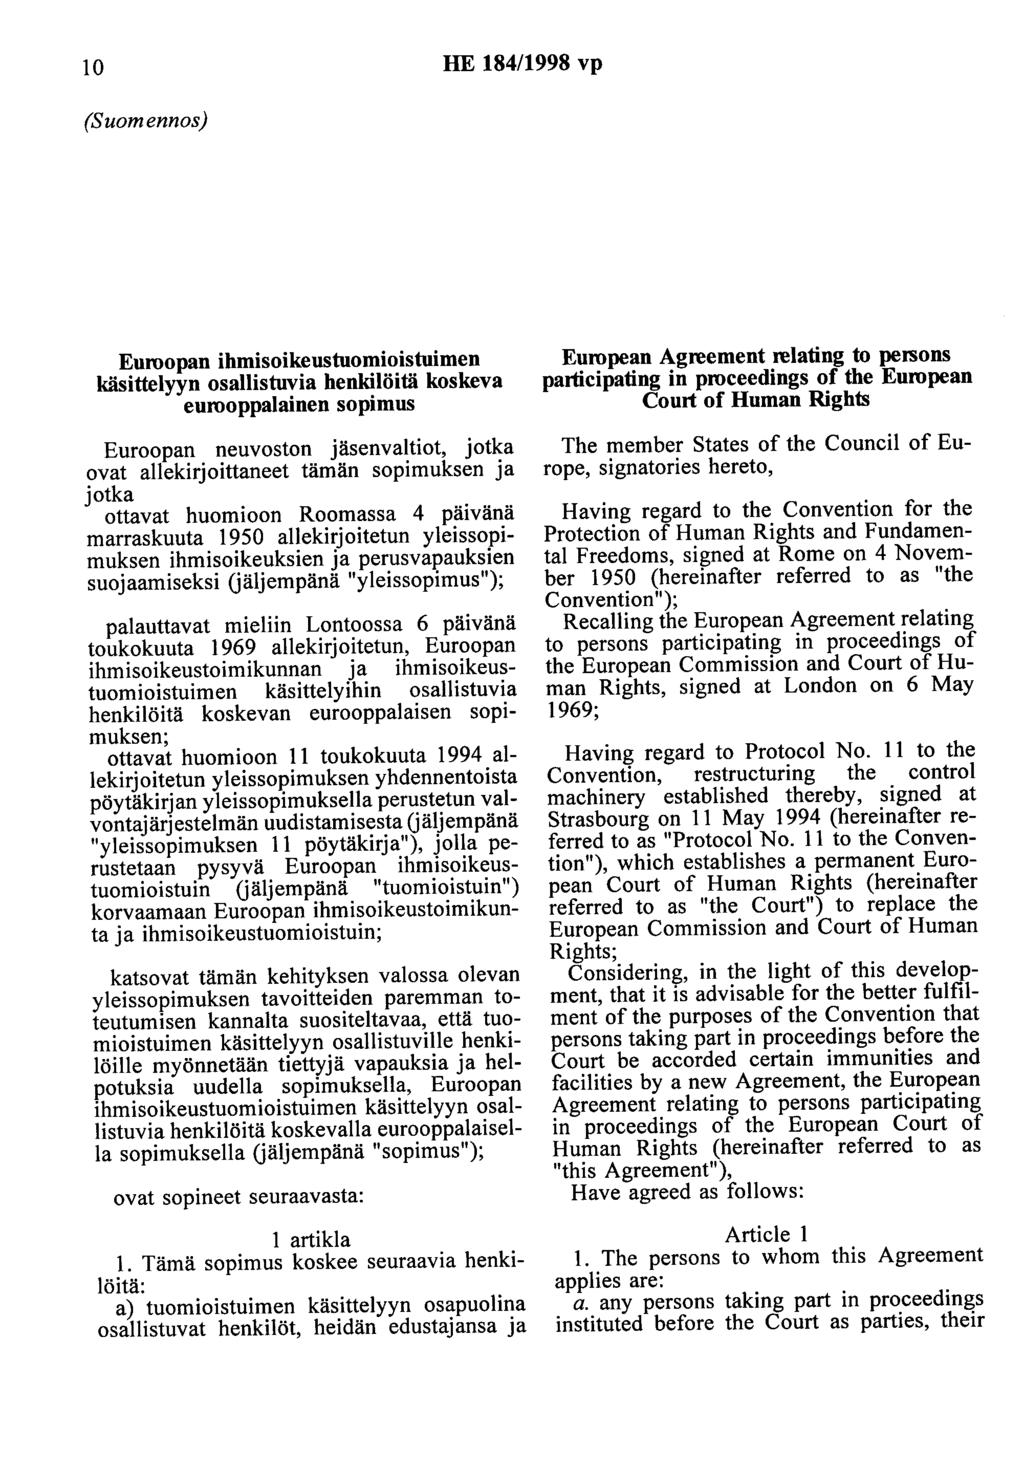 10 HE 184/1998 vp (Suomennos) Euroopan ihmisoikeustuomioistuimen käsittelyyn osallistuvia henkilöitä koskeva eurooppalainen sopimus Euroopan neuvoston jäsenvaltiot, jotka ovat allekirjoittaneet tämän